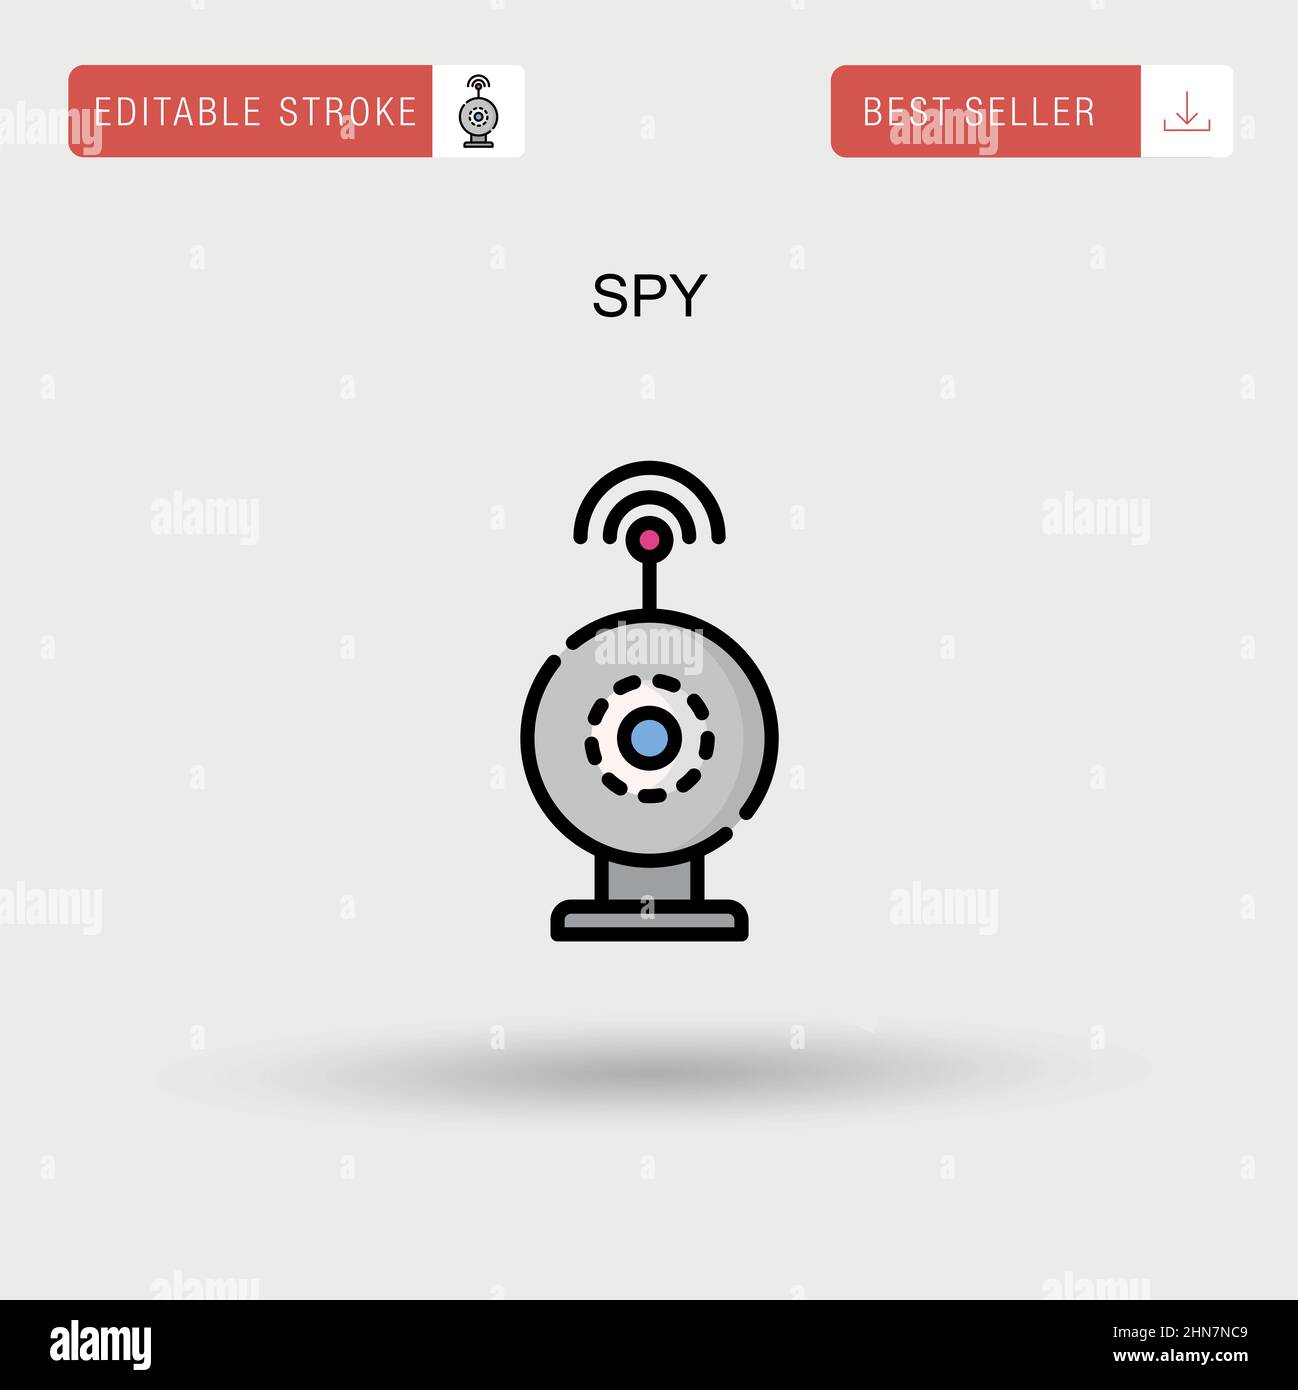 Spy Simple vector icon. Stock Vector